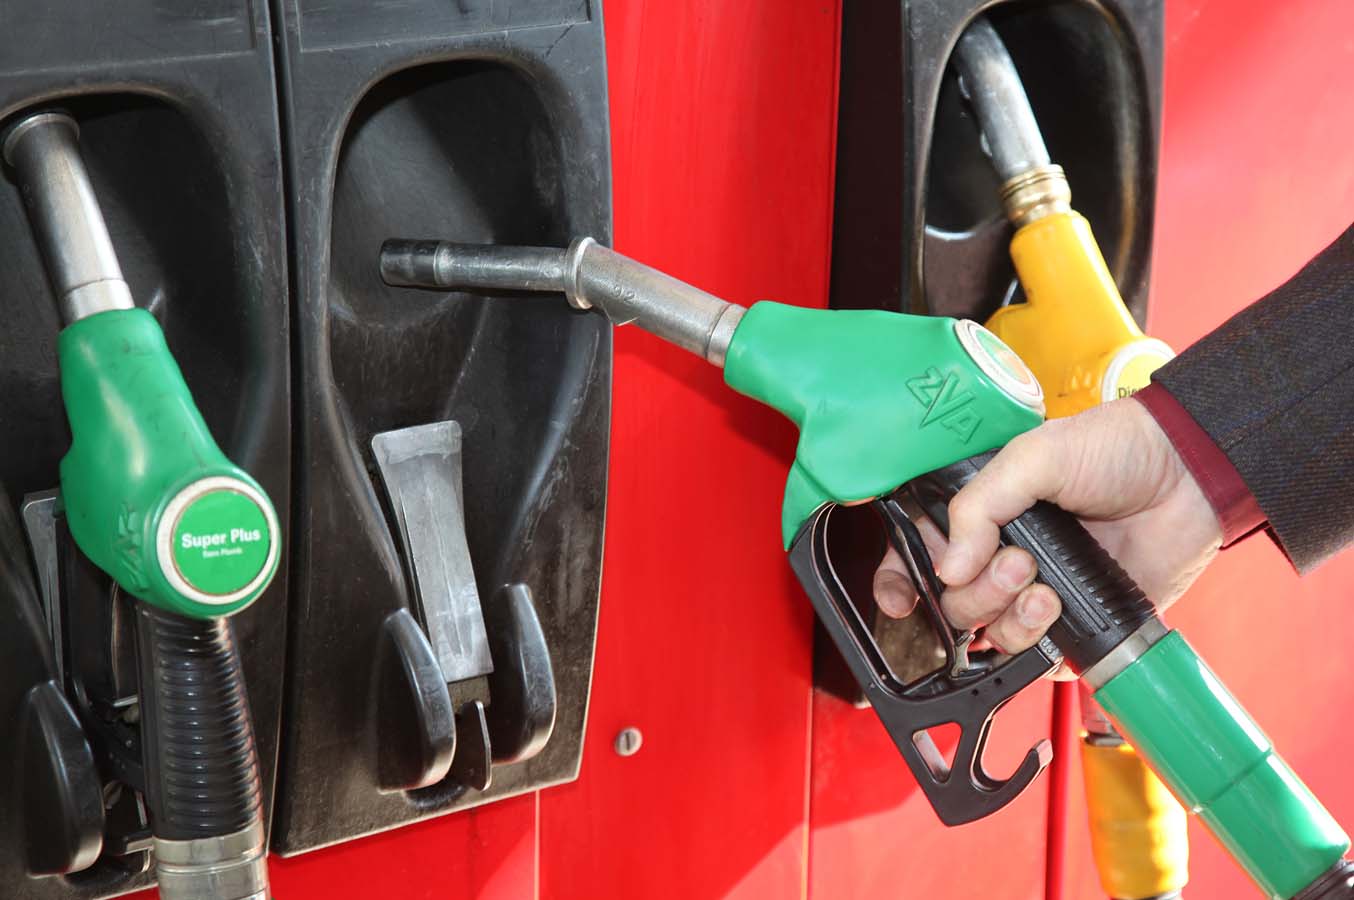     Les prix des carburants augmentent de 1 centime 

